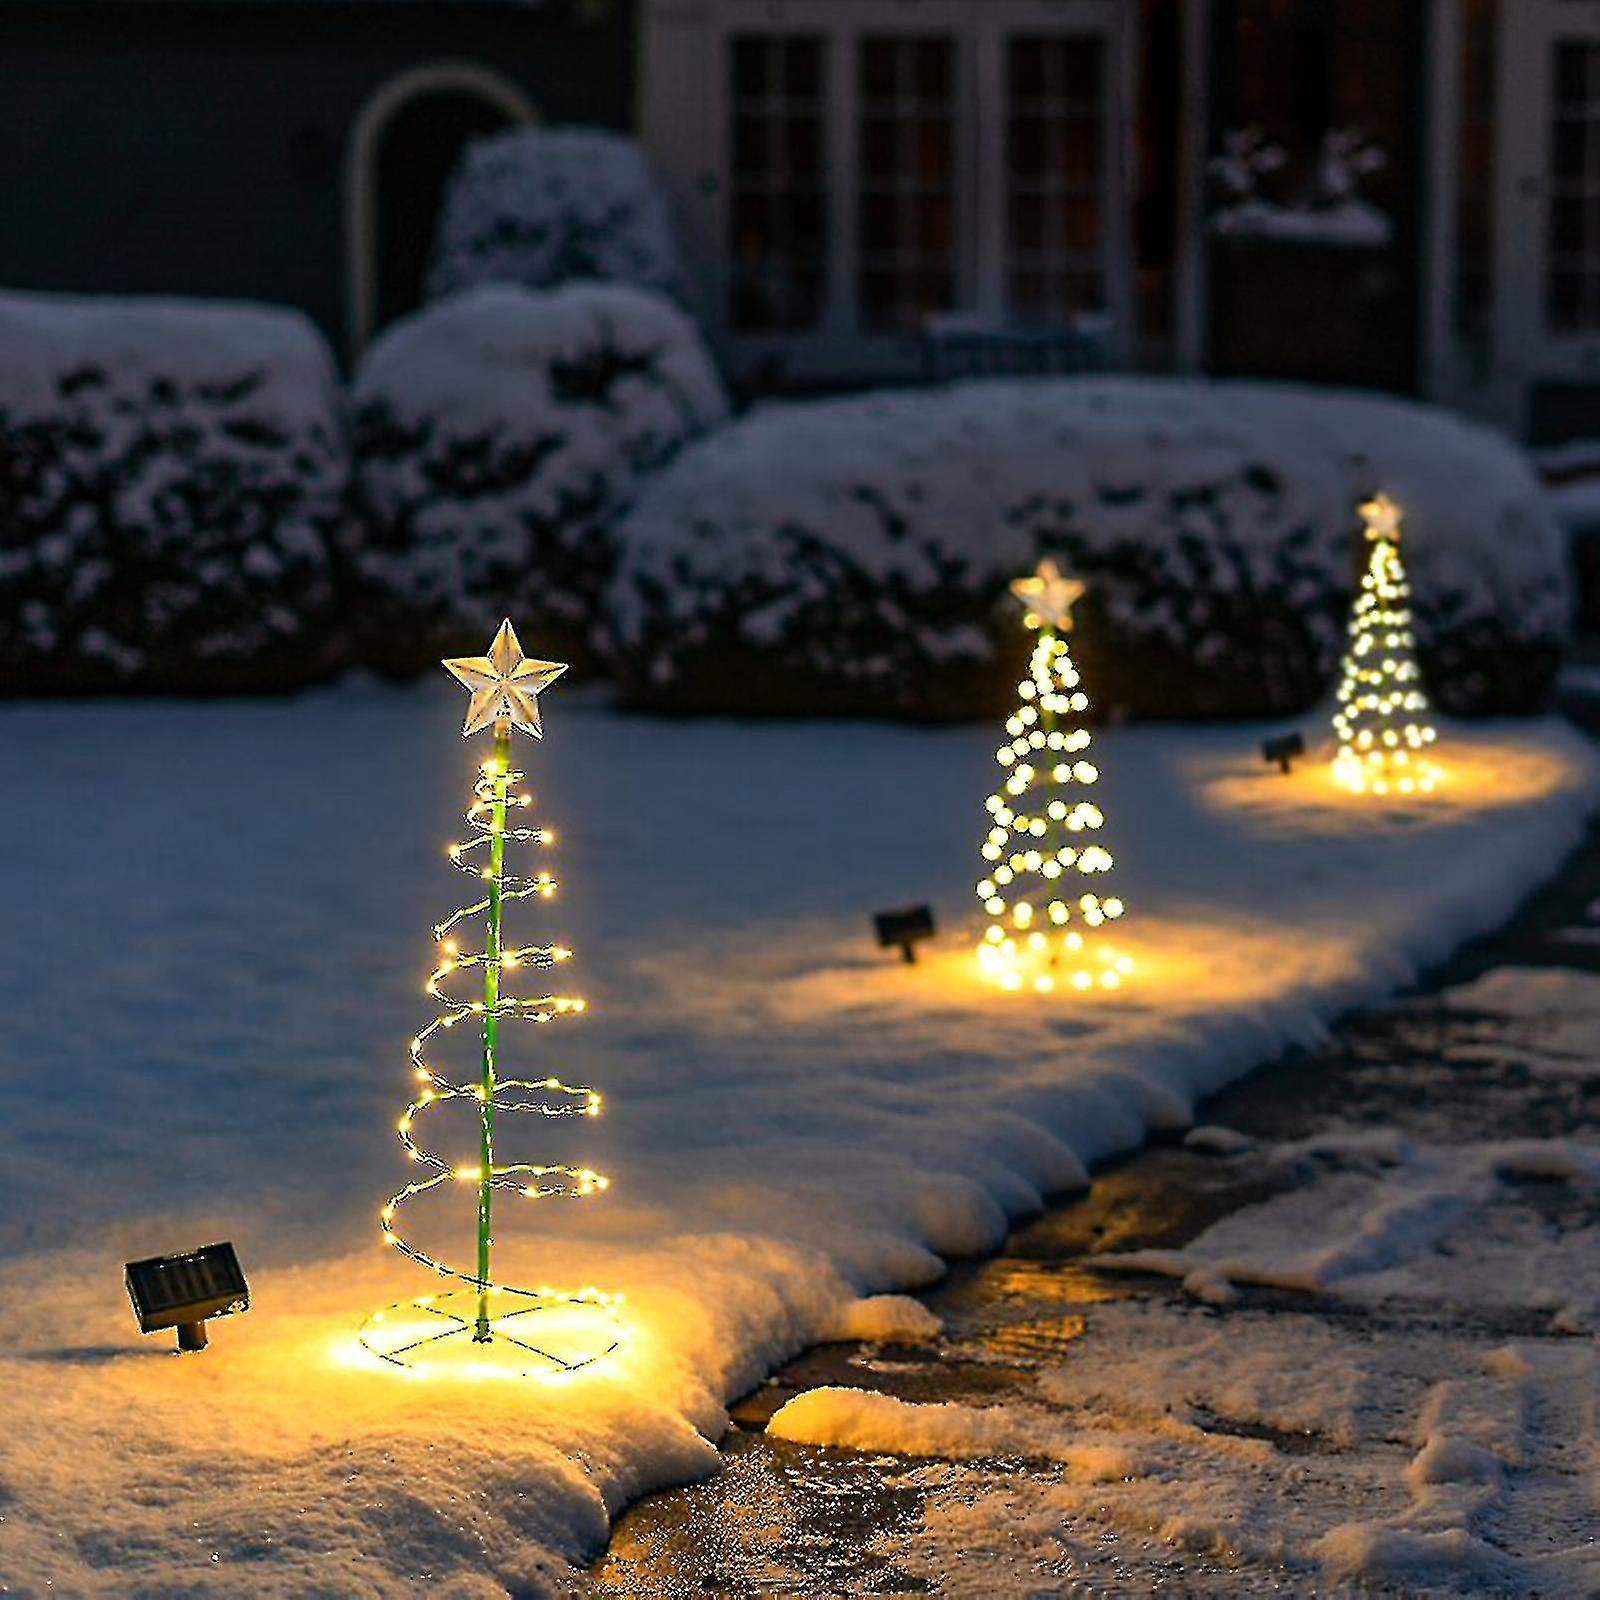 15 Creative Ways to Hang Outdoor Christmas Lights插图